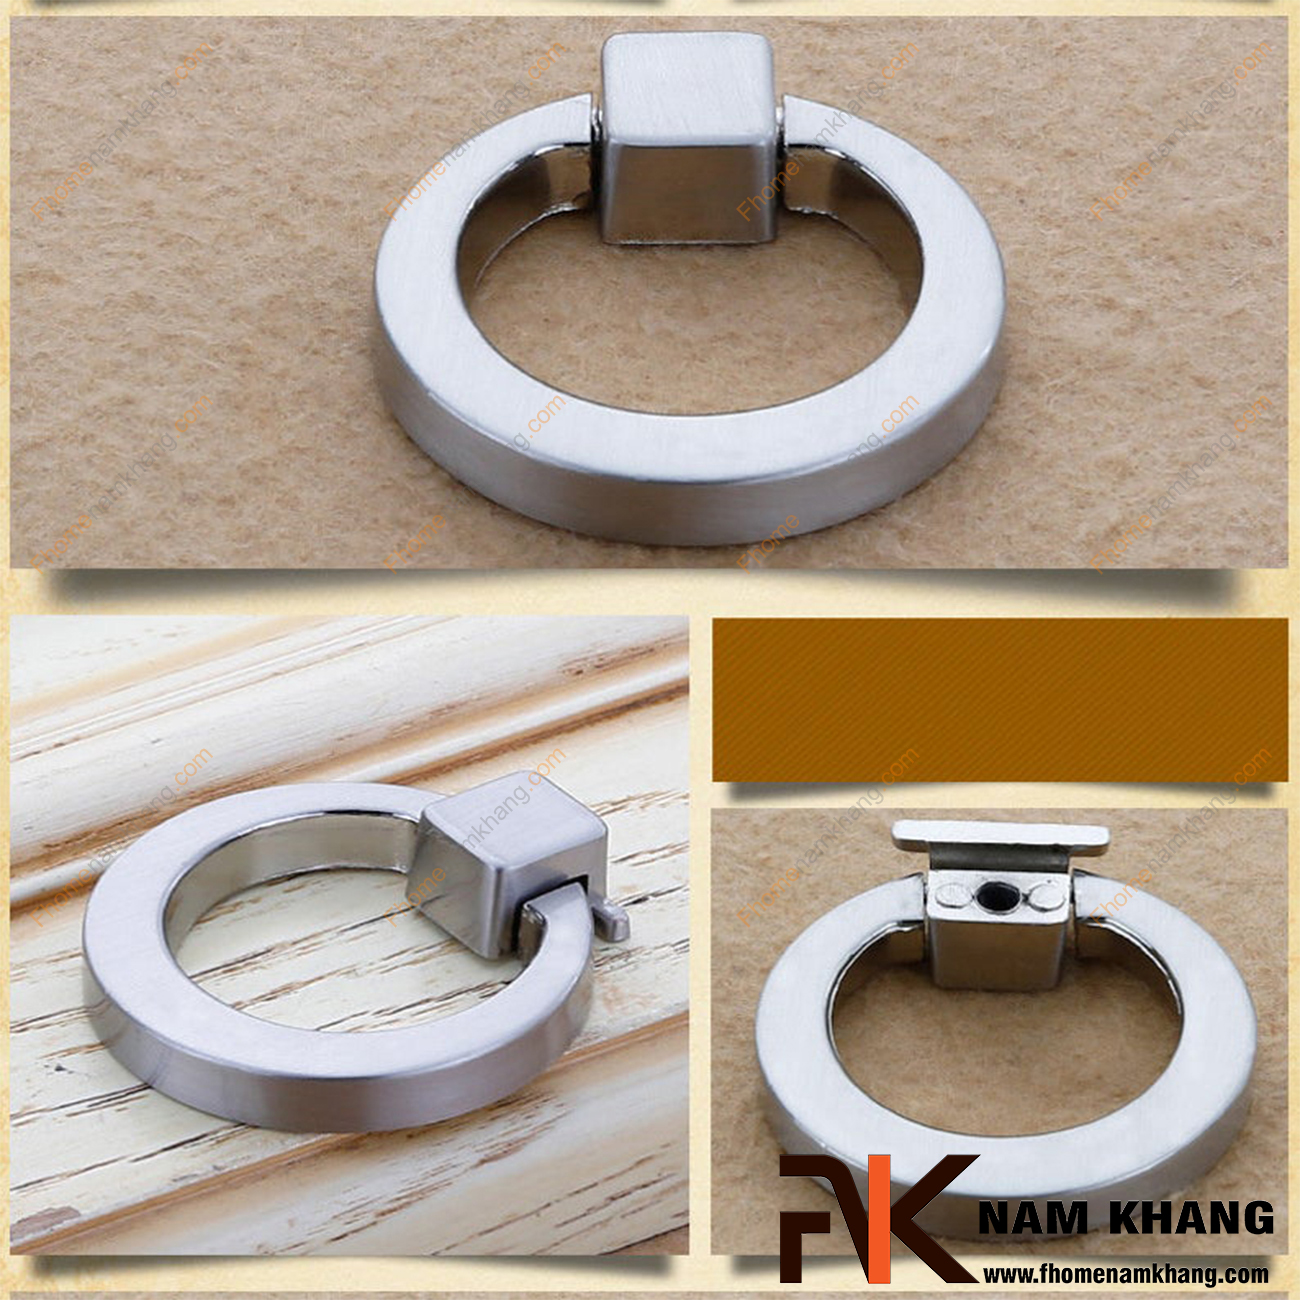 Núm cửa tủ dạng vòng màu trắng bạc bóng NK161-B có thiết kế khá đơn giản khi sử dụng kết hợp phần chân đế hình vuông với vòng cao cấp